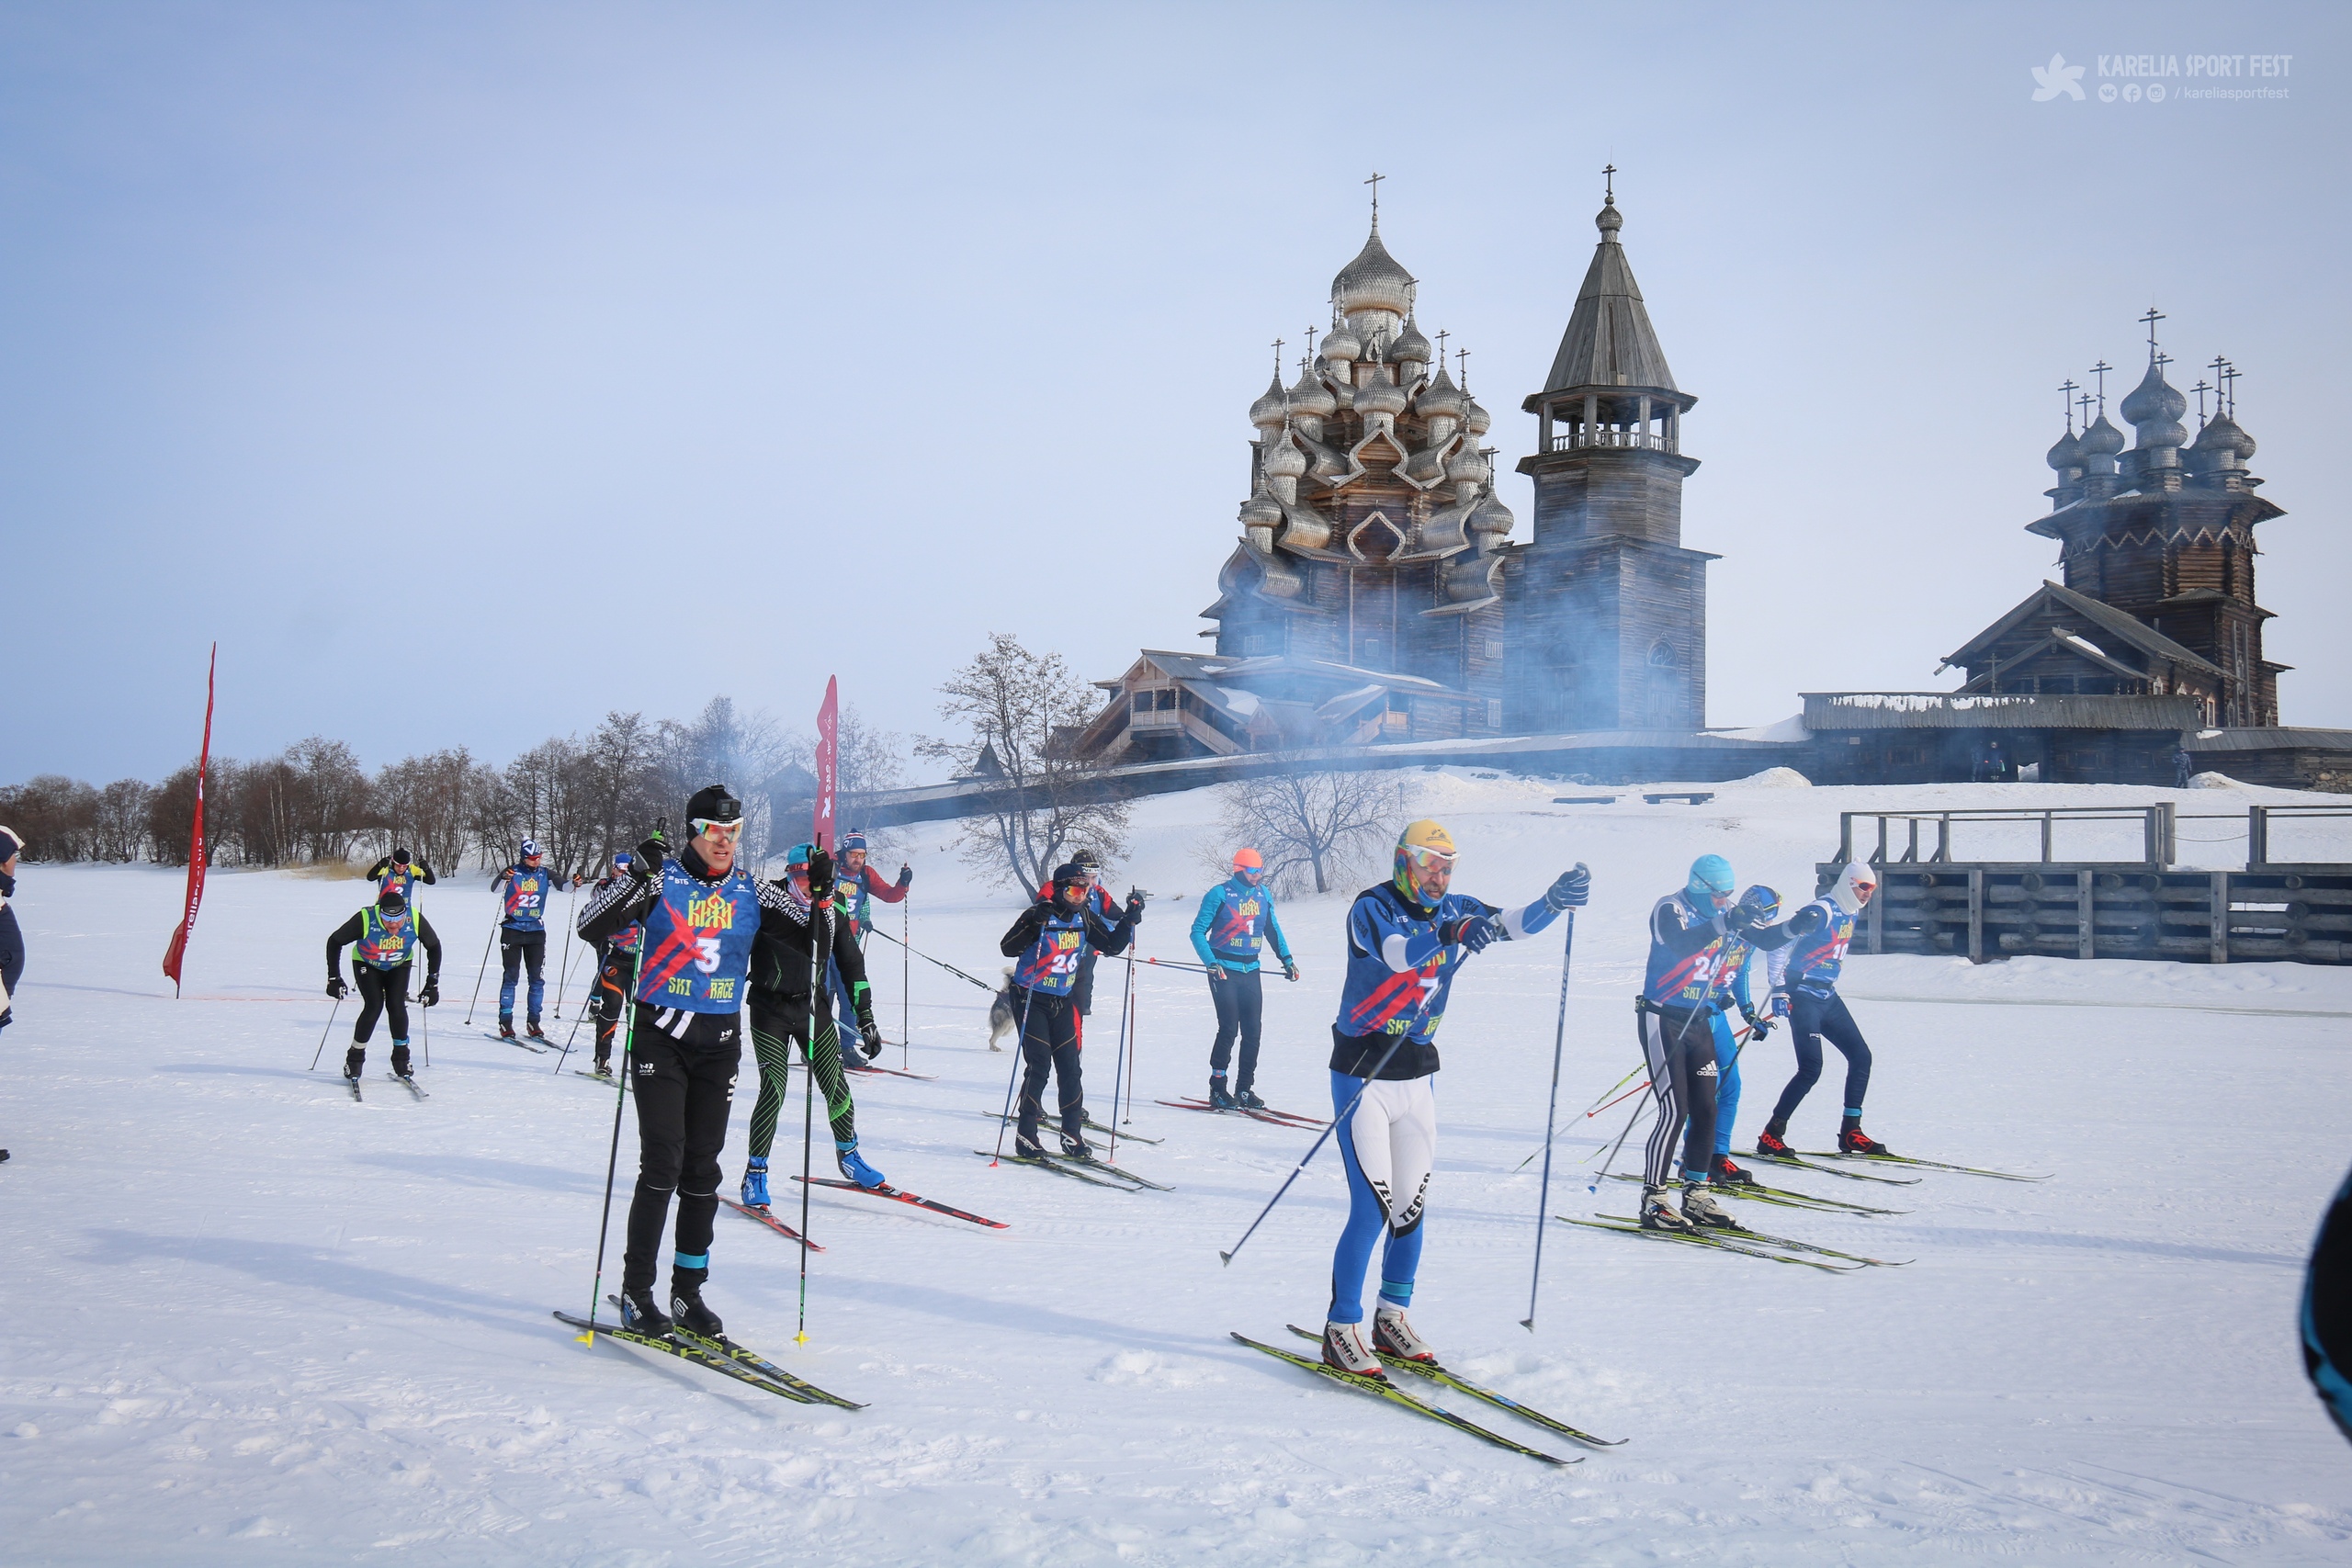 Tänä lauantaina Kižin saarella järjestetään hiihtomaraton. Osallistujat hiihtävät yli 60 kilometriä. Kuva: Kiži Ski x-RACE -hiihtokisojen Vkontakte-sivu. 